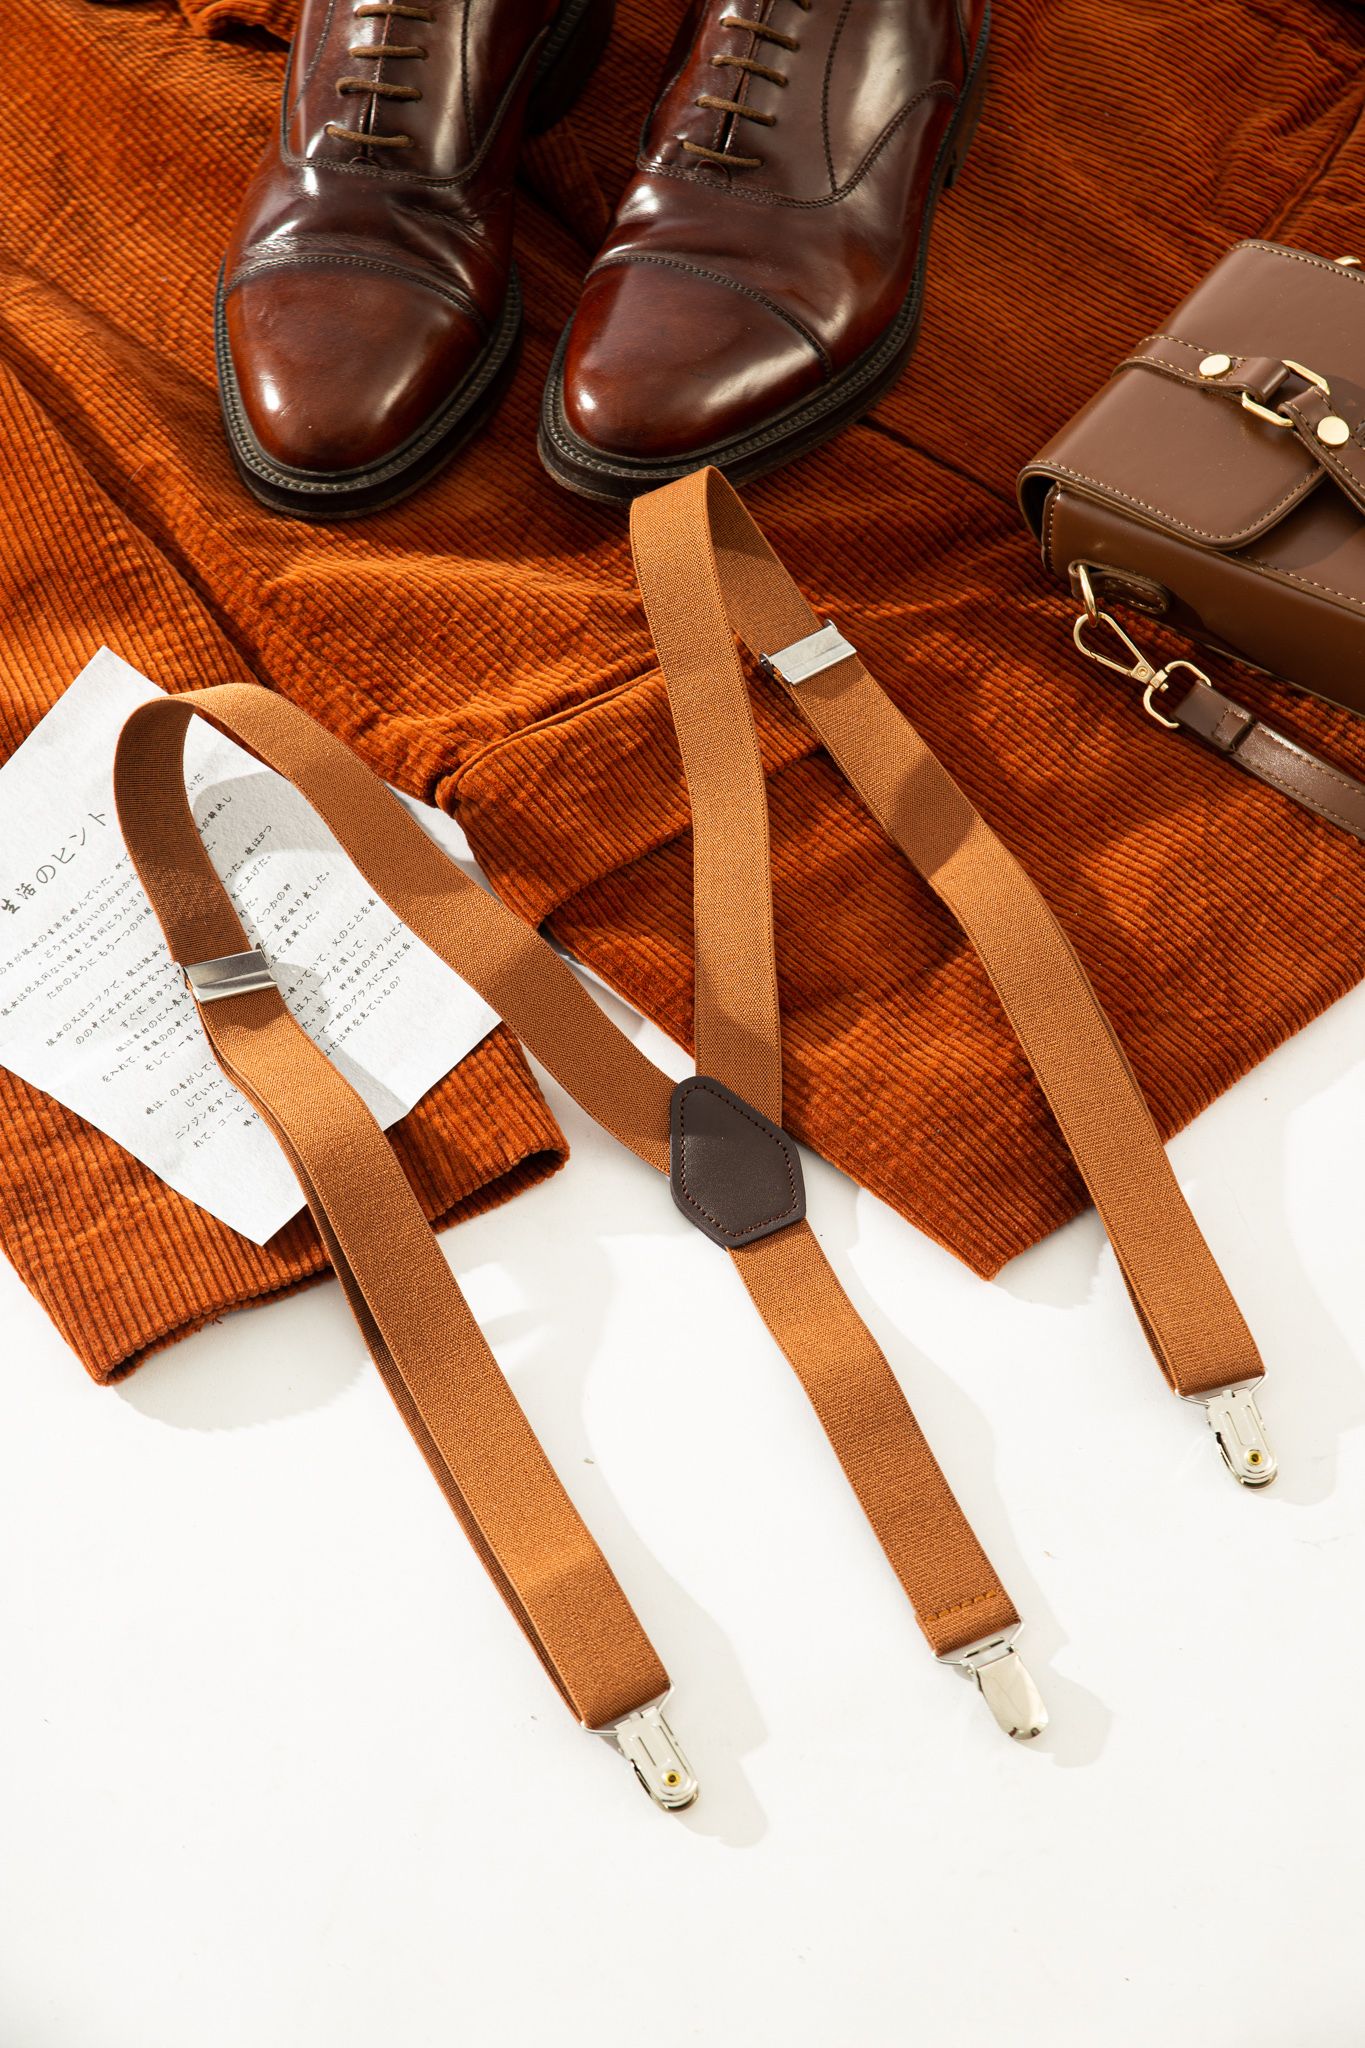  Brown Suspenders 